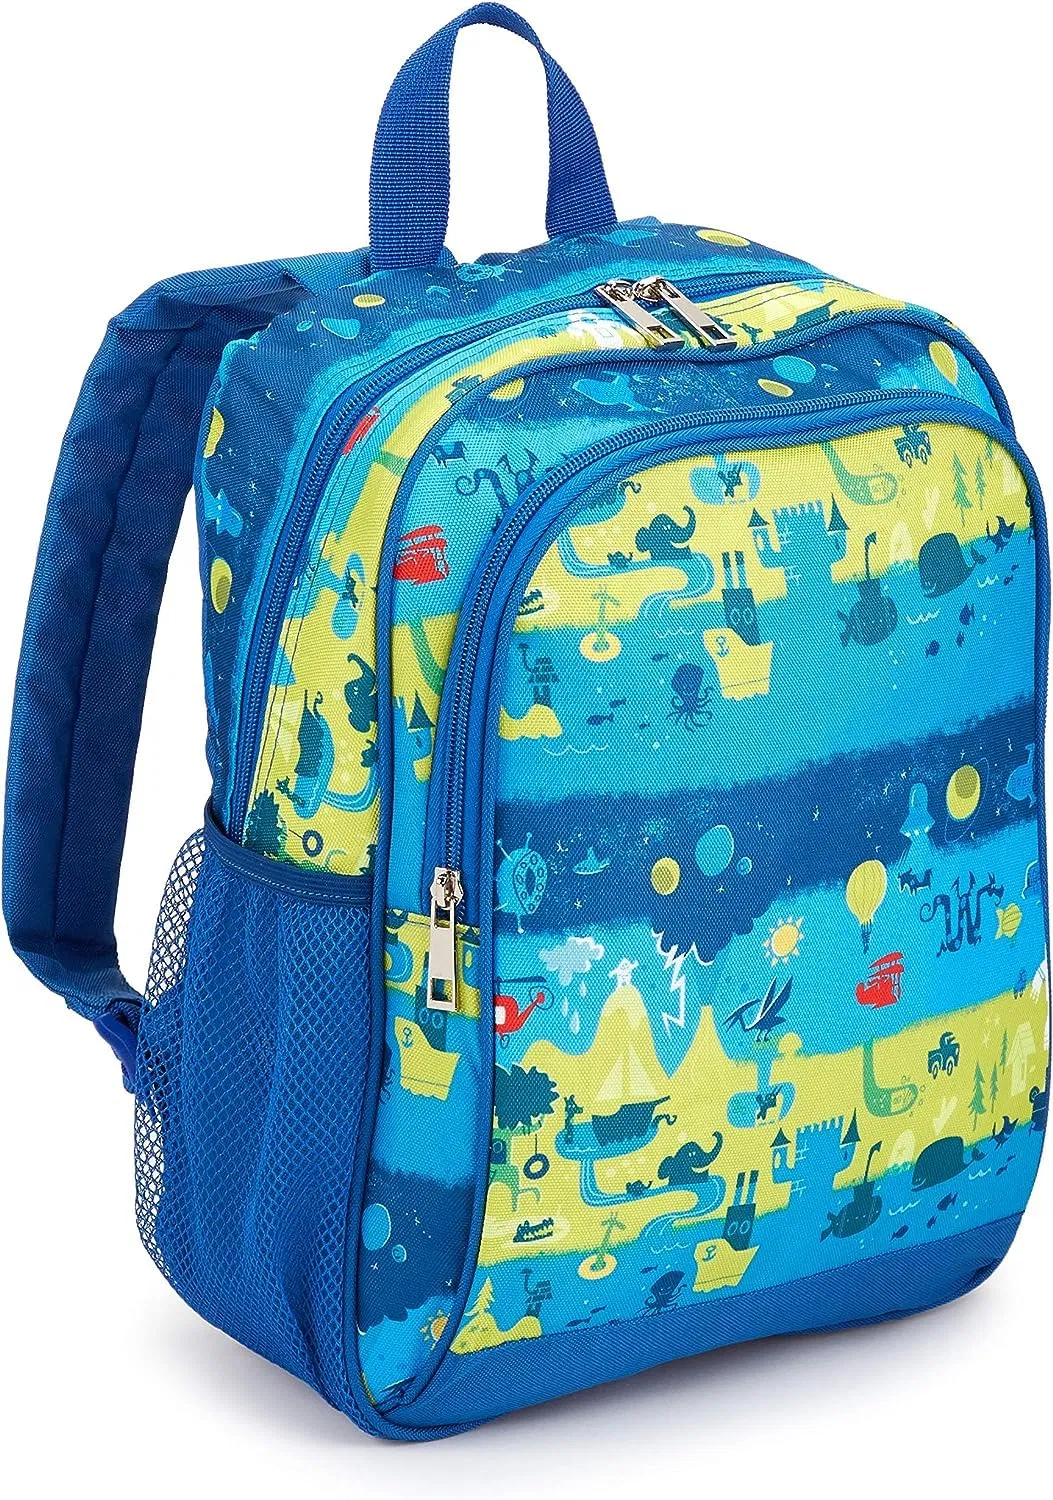 Protective Bumper Colorful Compatible Preschool Kindergarten Toddler School Kids Backpack